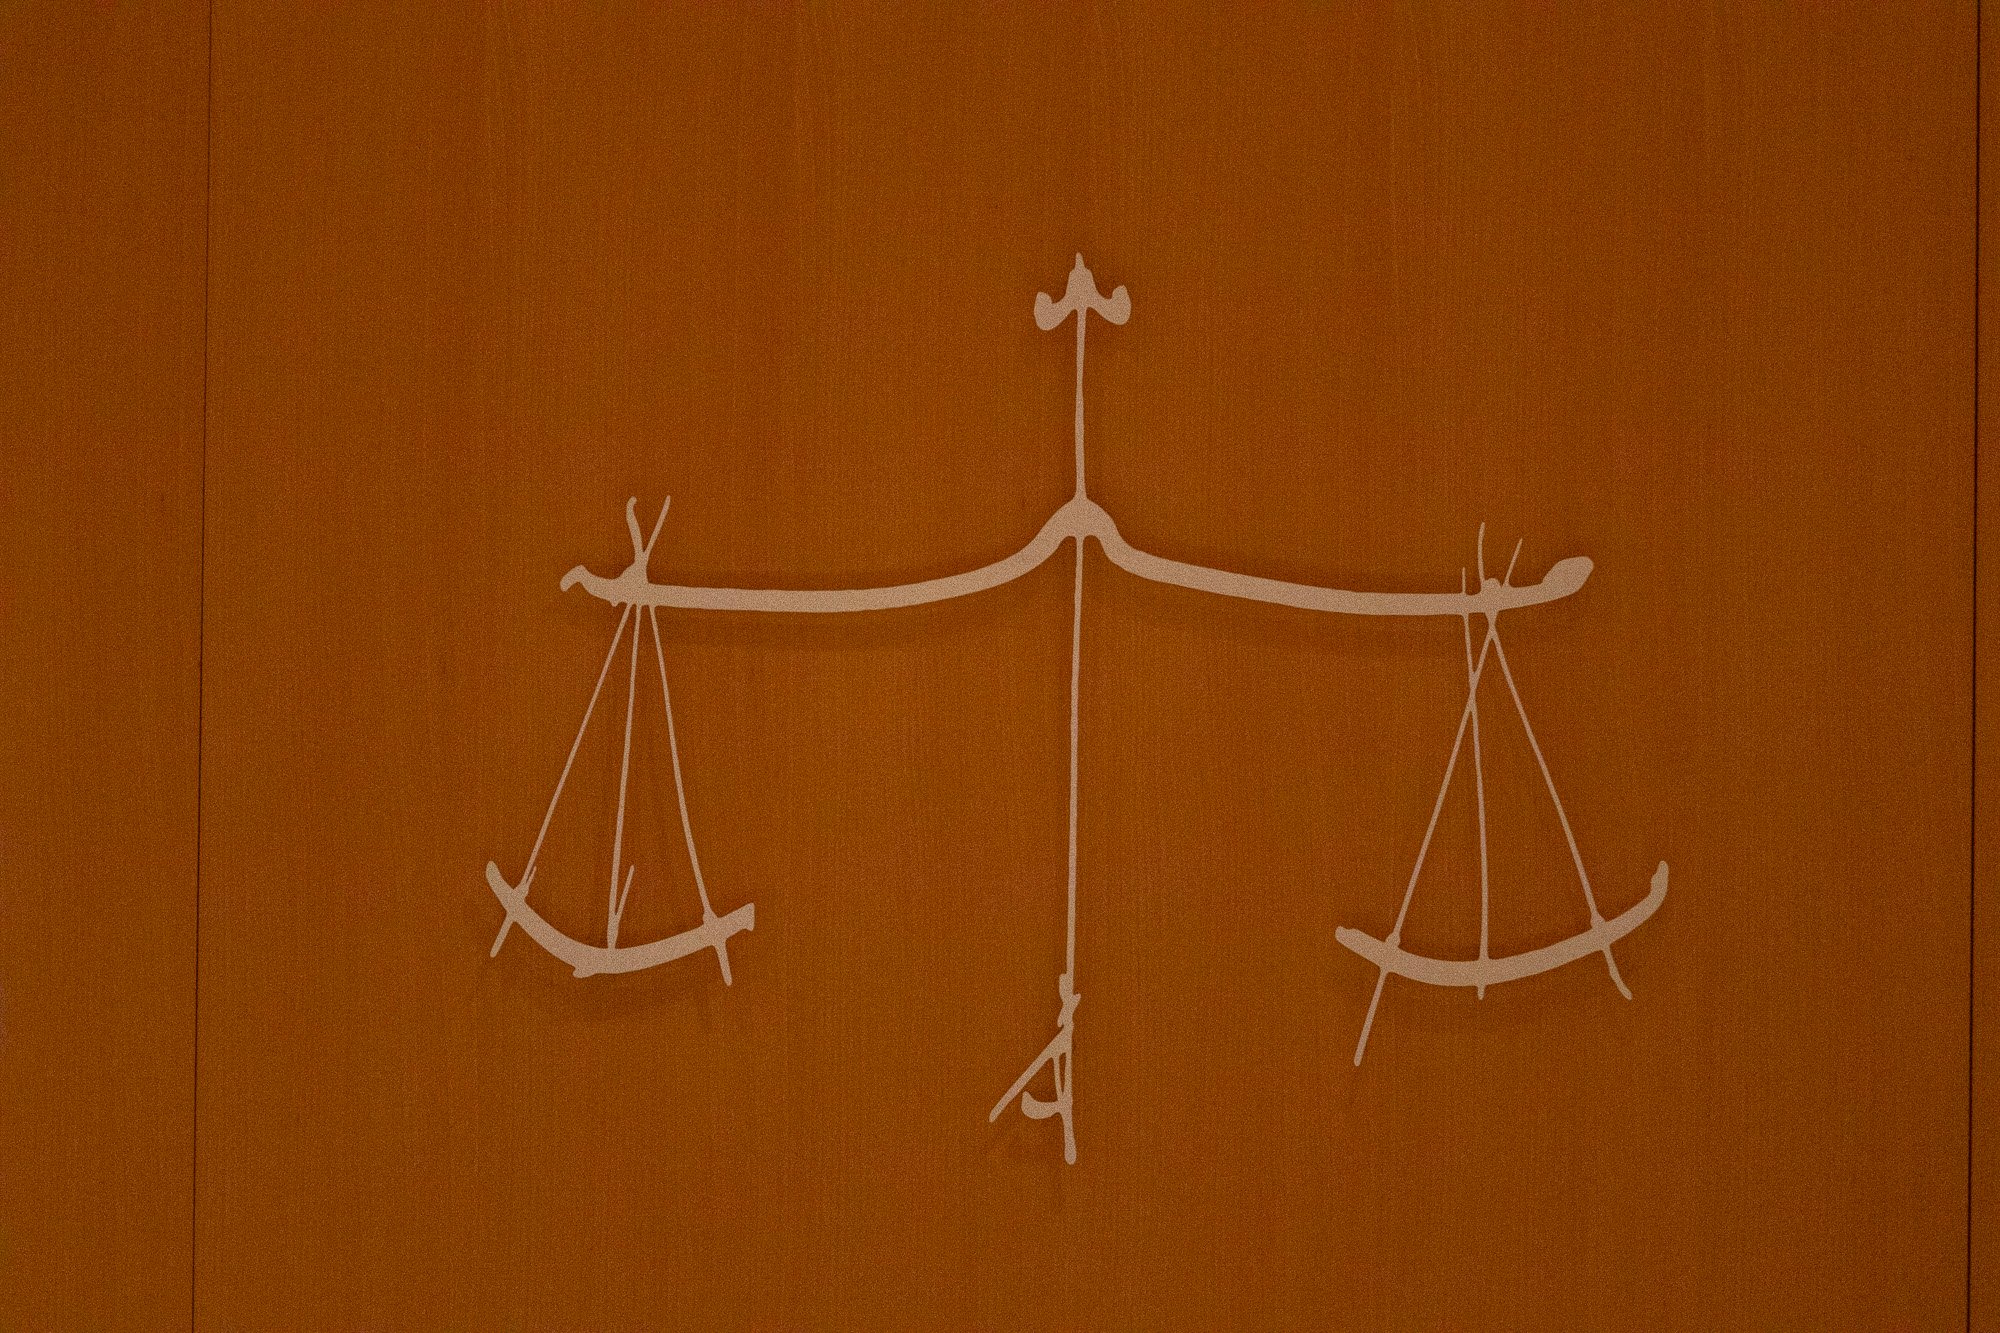 L’audience de règlement amiable : quelles avancées pour l’office conciliatoire du juge ?